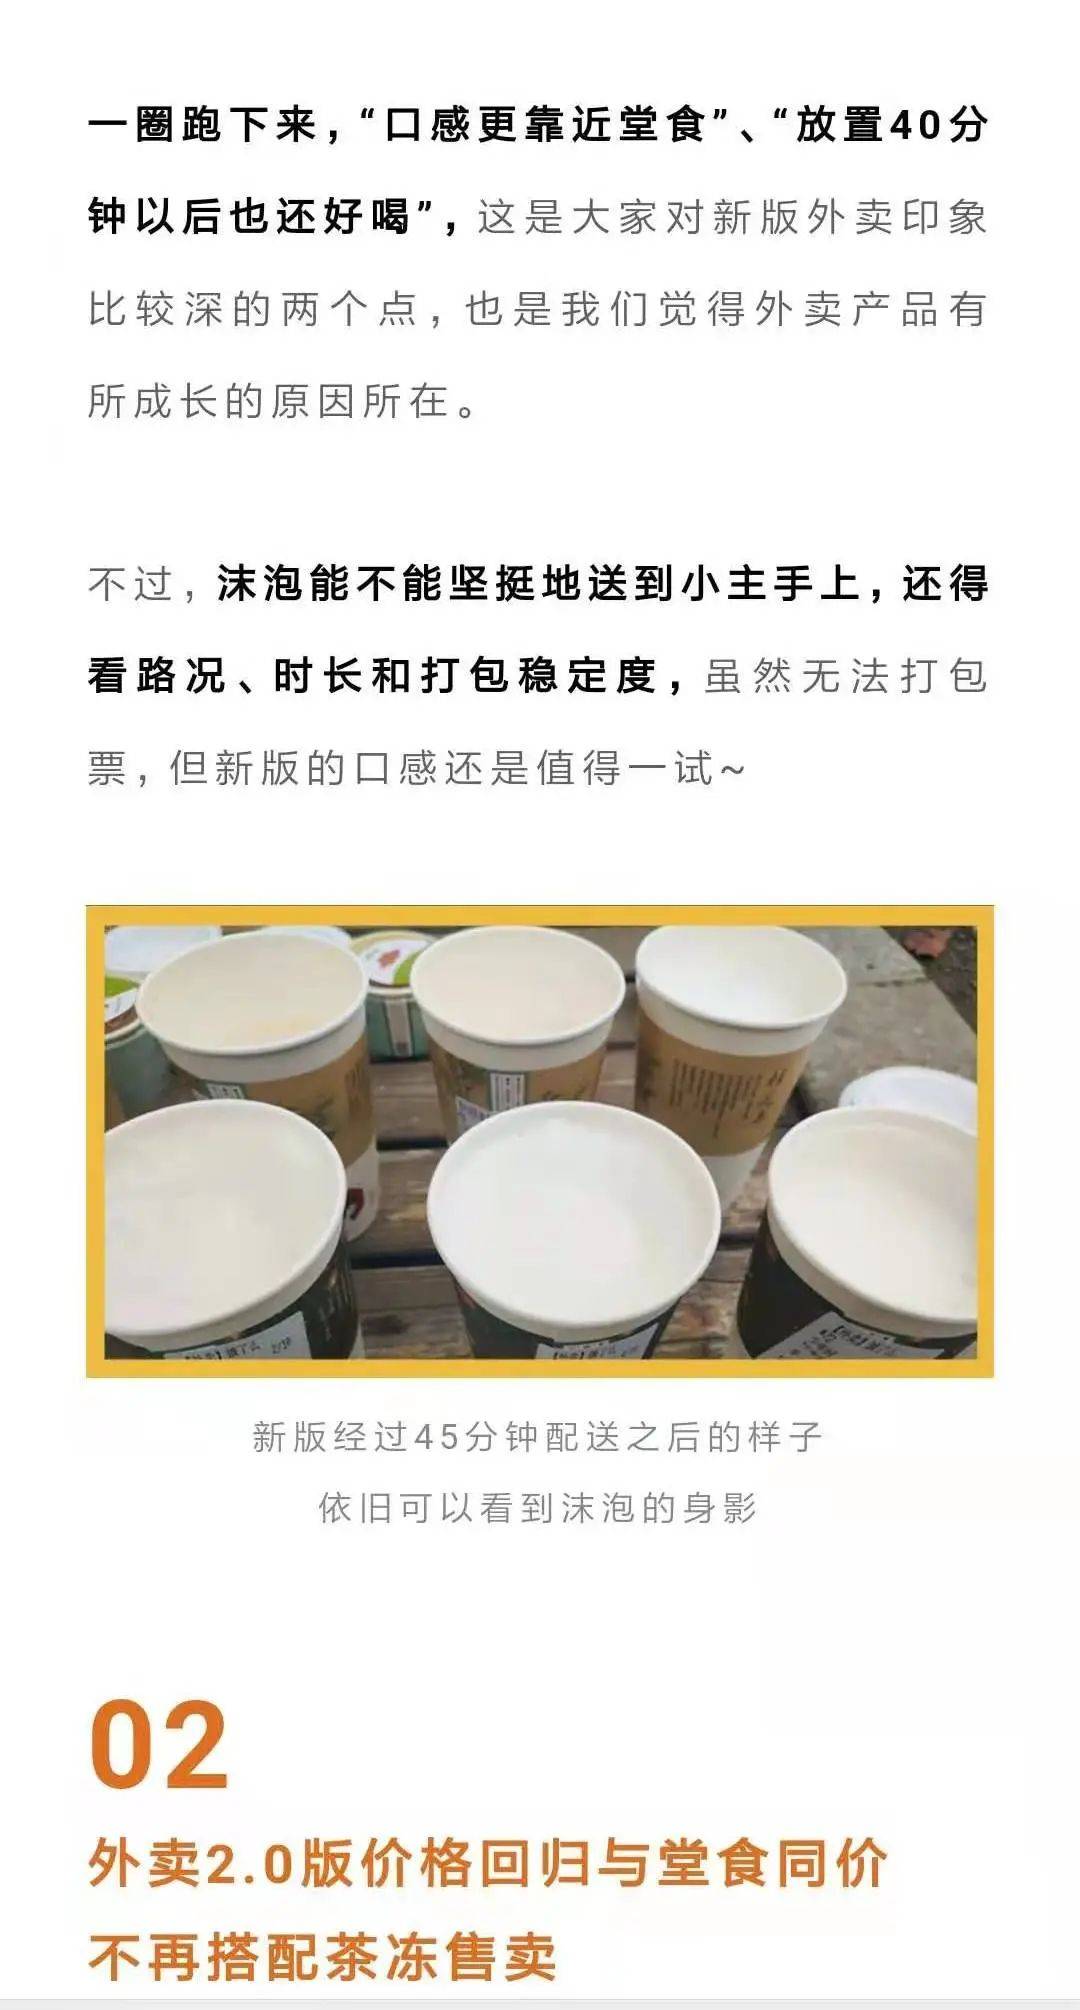 武汉茶颜开店的第二周 社区开始团购奶茶了